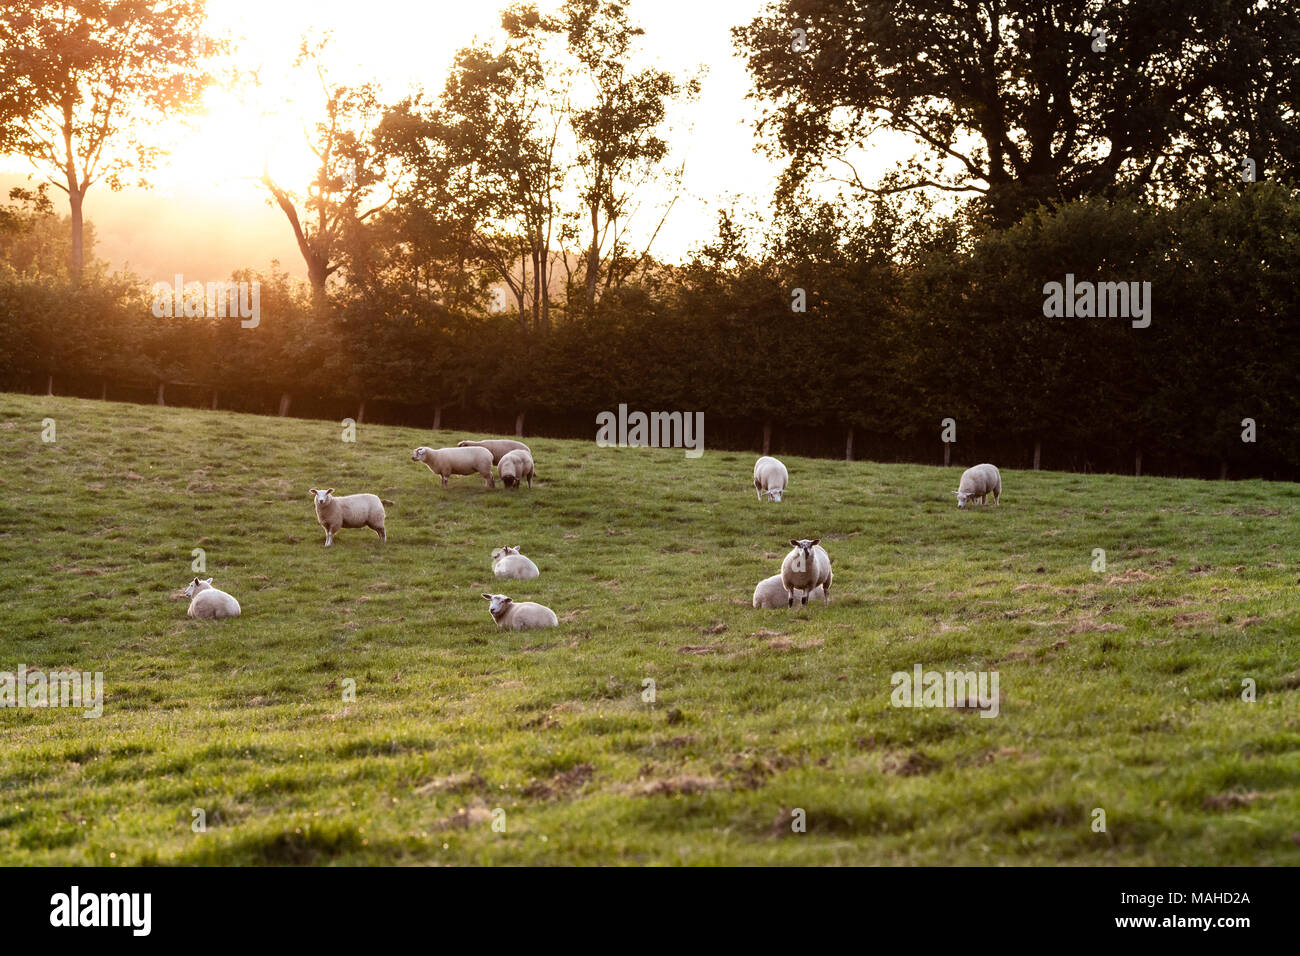 Schafe in einem Feld mit Sonnenschein. Künstlerische Leuchteffekt hinzugefügt. Stockfoto